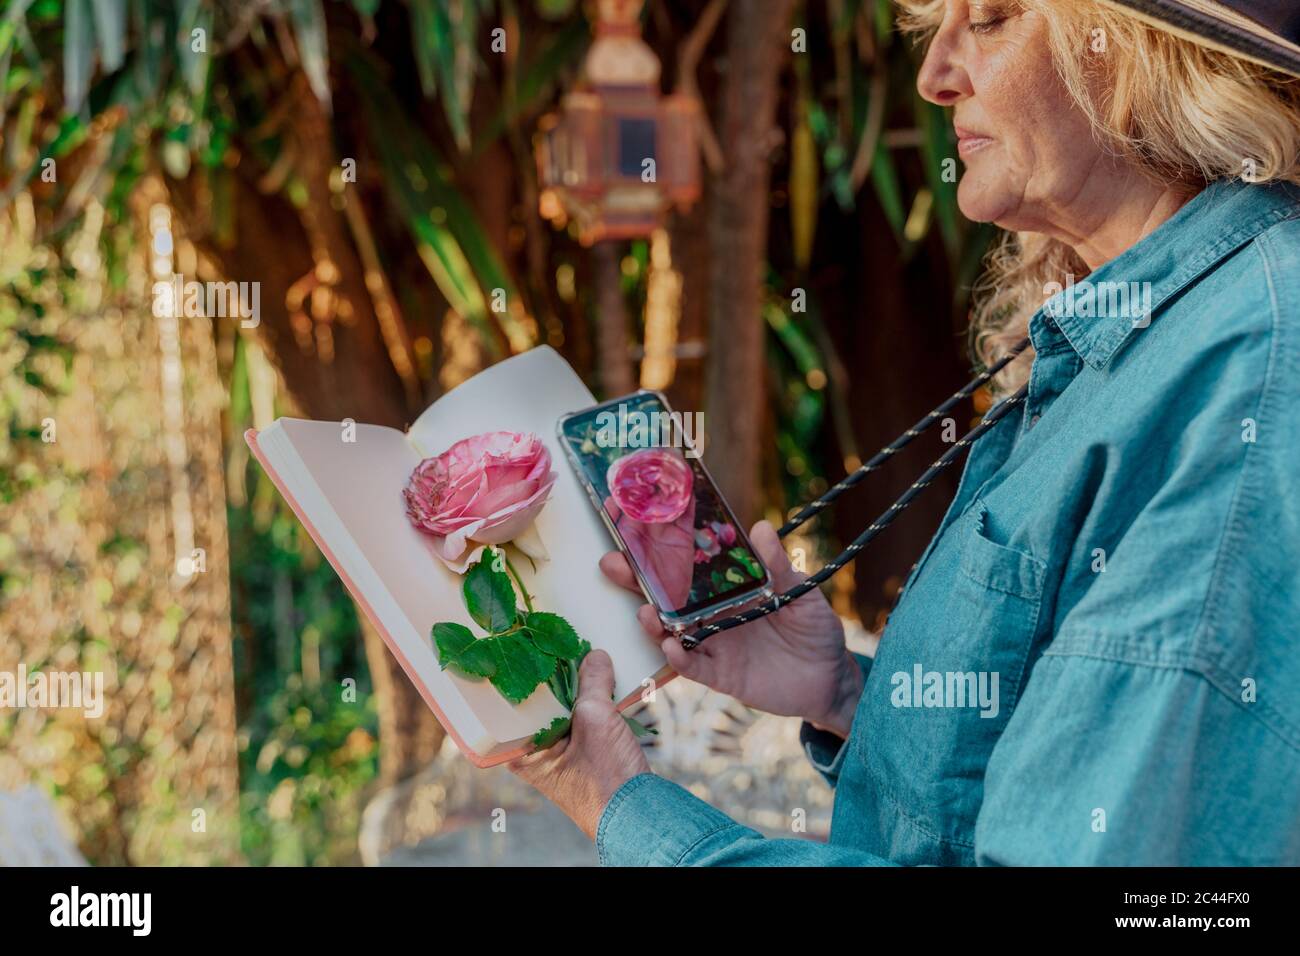 Donna anziana che tiene il libro, la fioritura della rosa e lo smartphone con la foto della fioritura della rosa in giardino Foto Stock